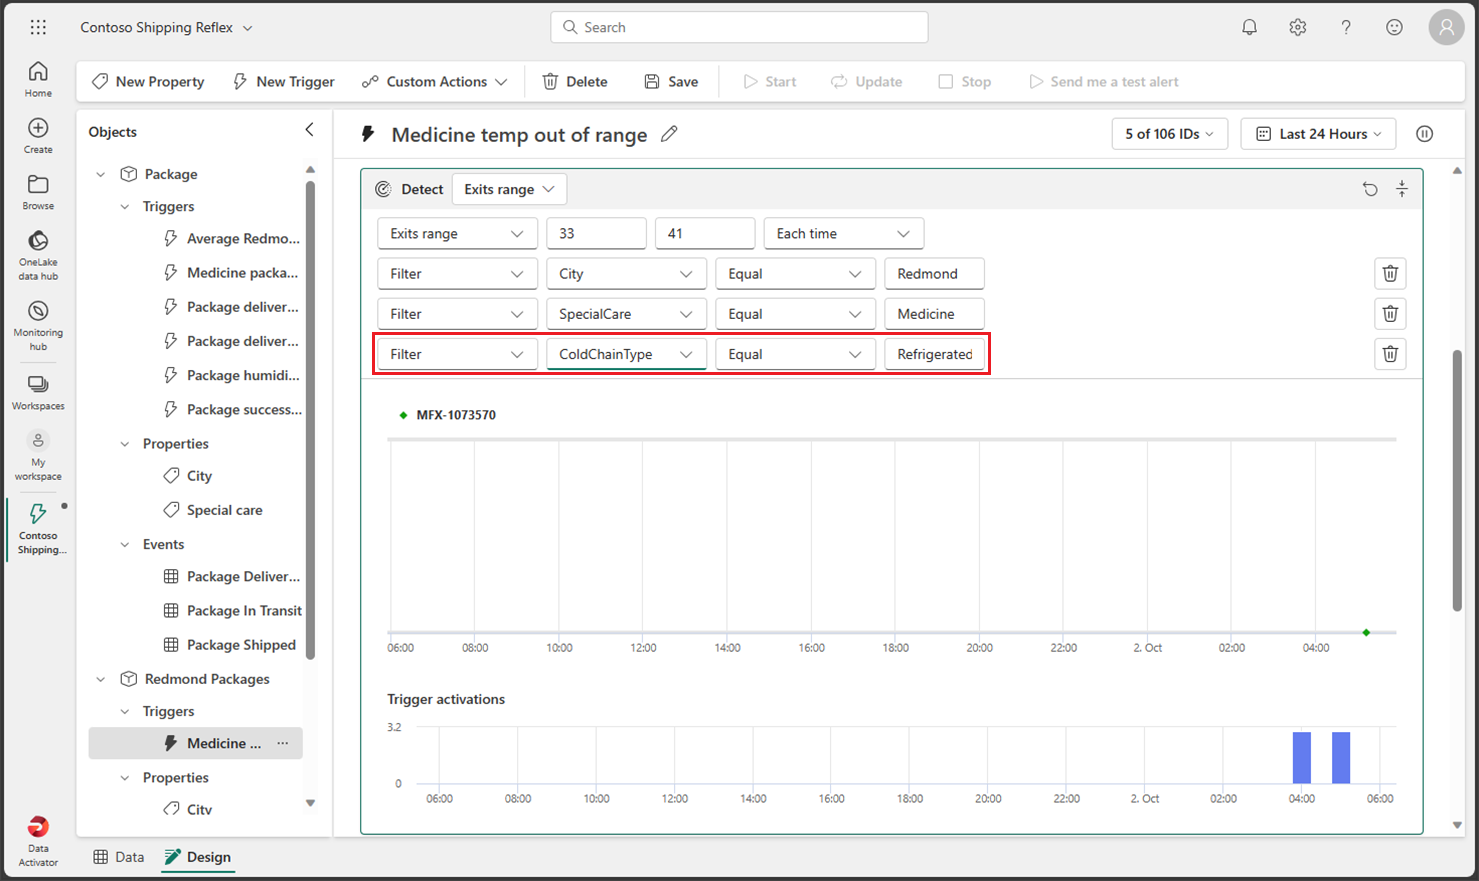 Screenshot of the Data Activator reflex Design add filter.